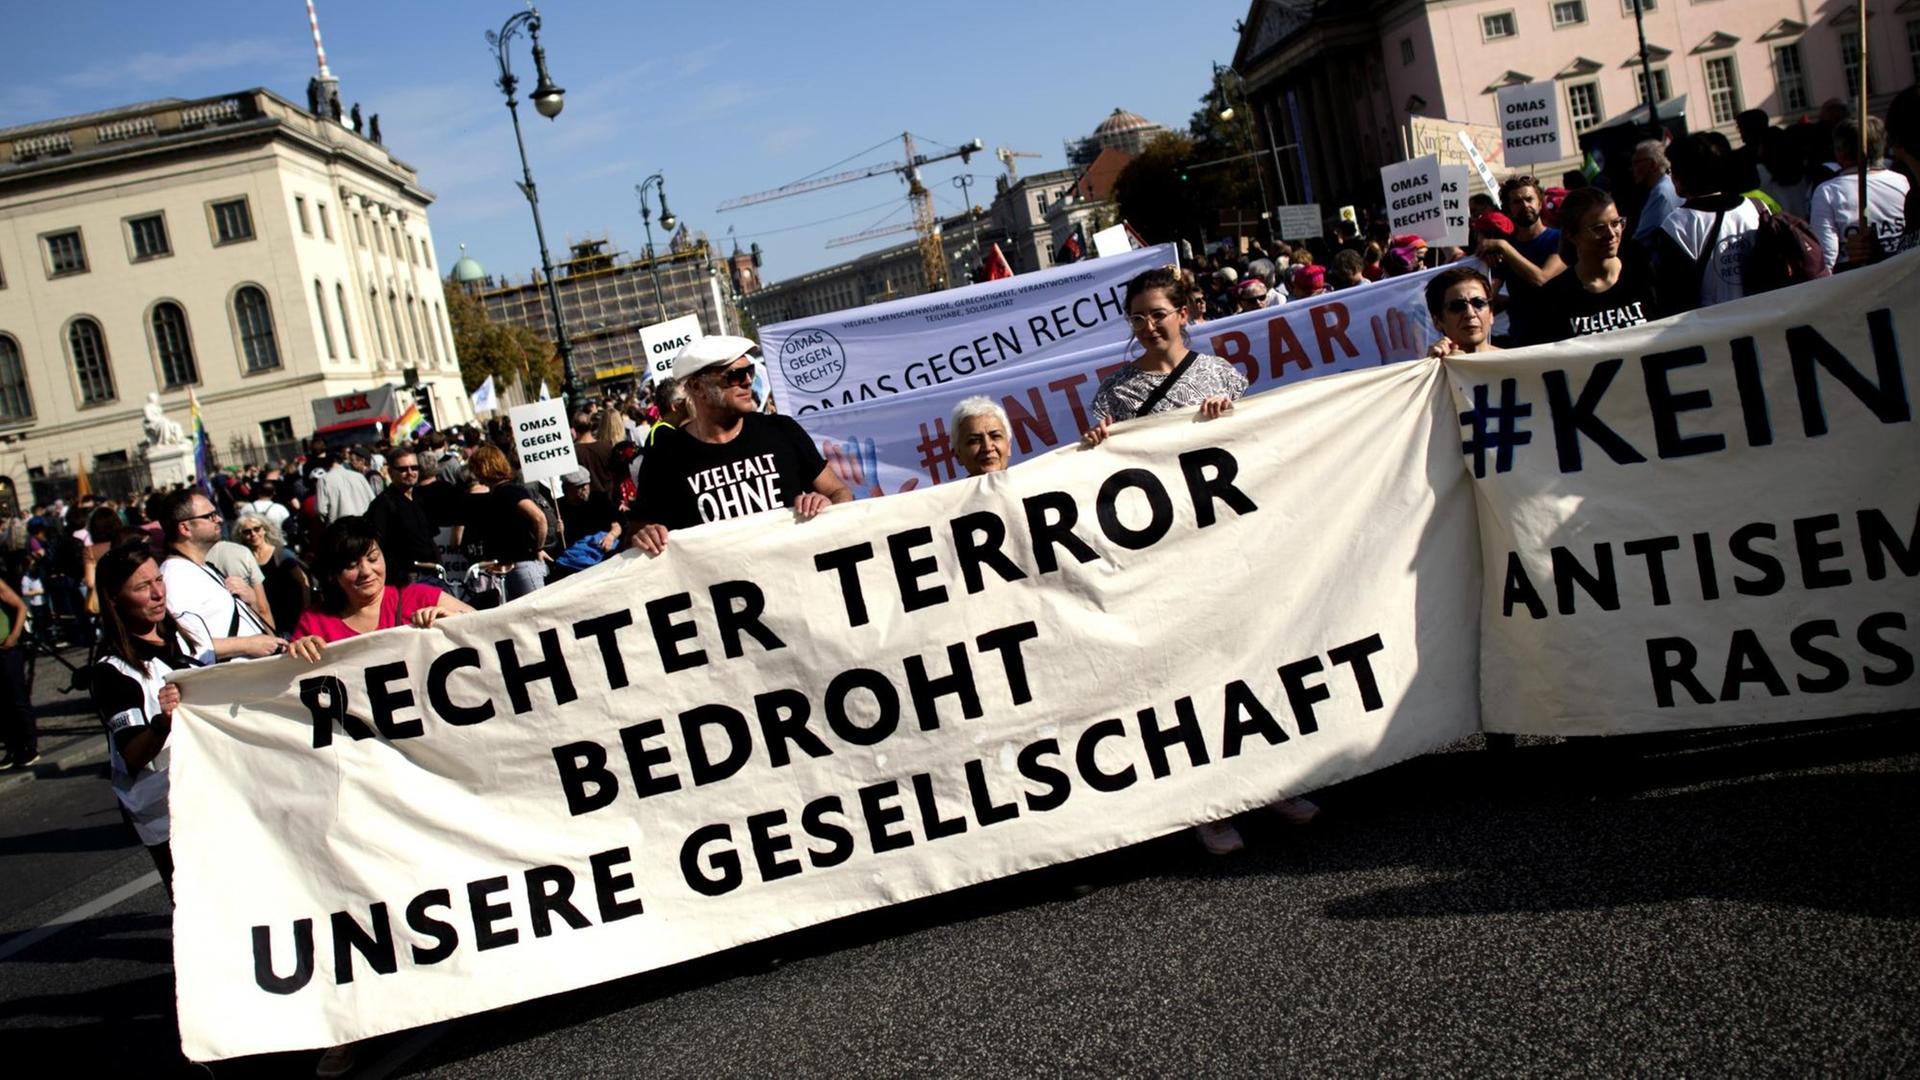 Auf einem Transparent ist zu lesen: "Rechter Terror bedroht unsere Gesellschaft"